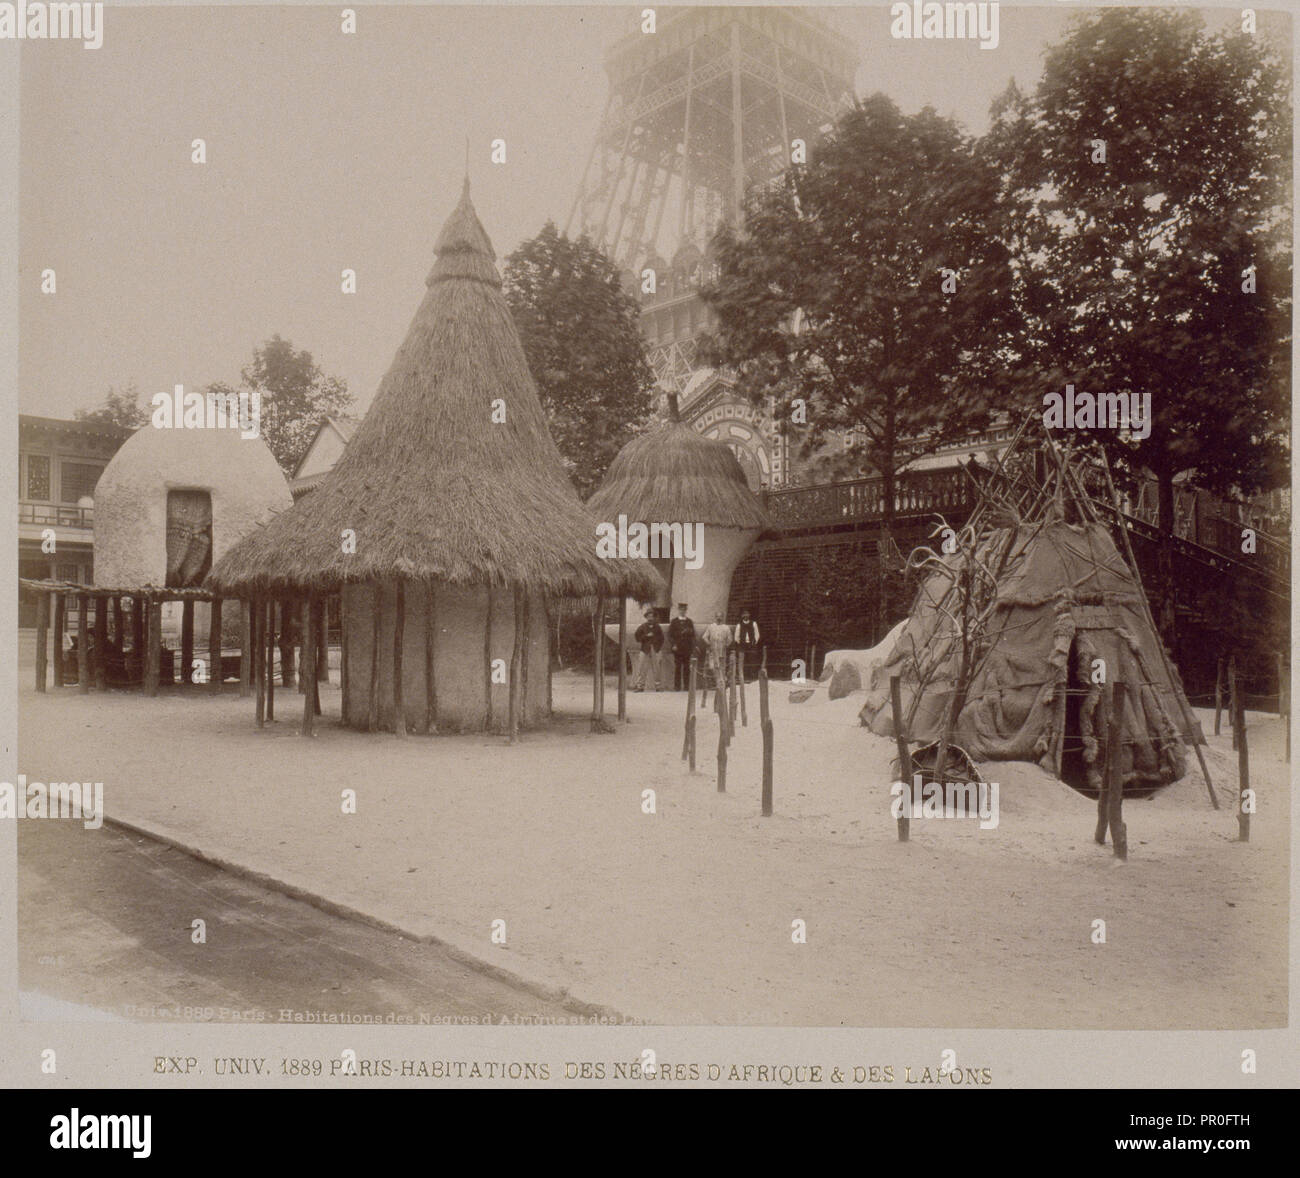 Habitations nègres d'Afrique et des Lapons, Exposition universelle, Paris, B.K. Editeur., Albumen, 1889, View of the African Stock Photo